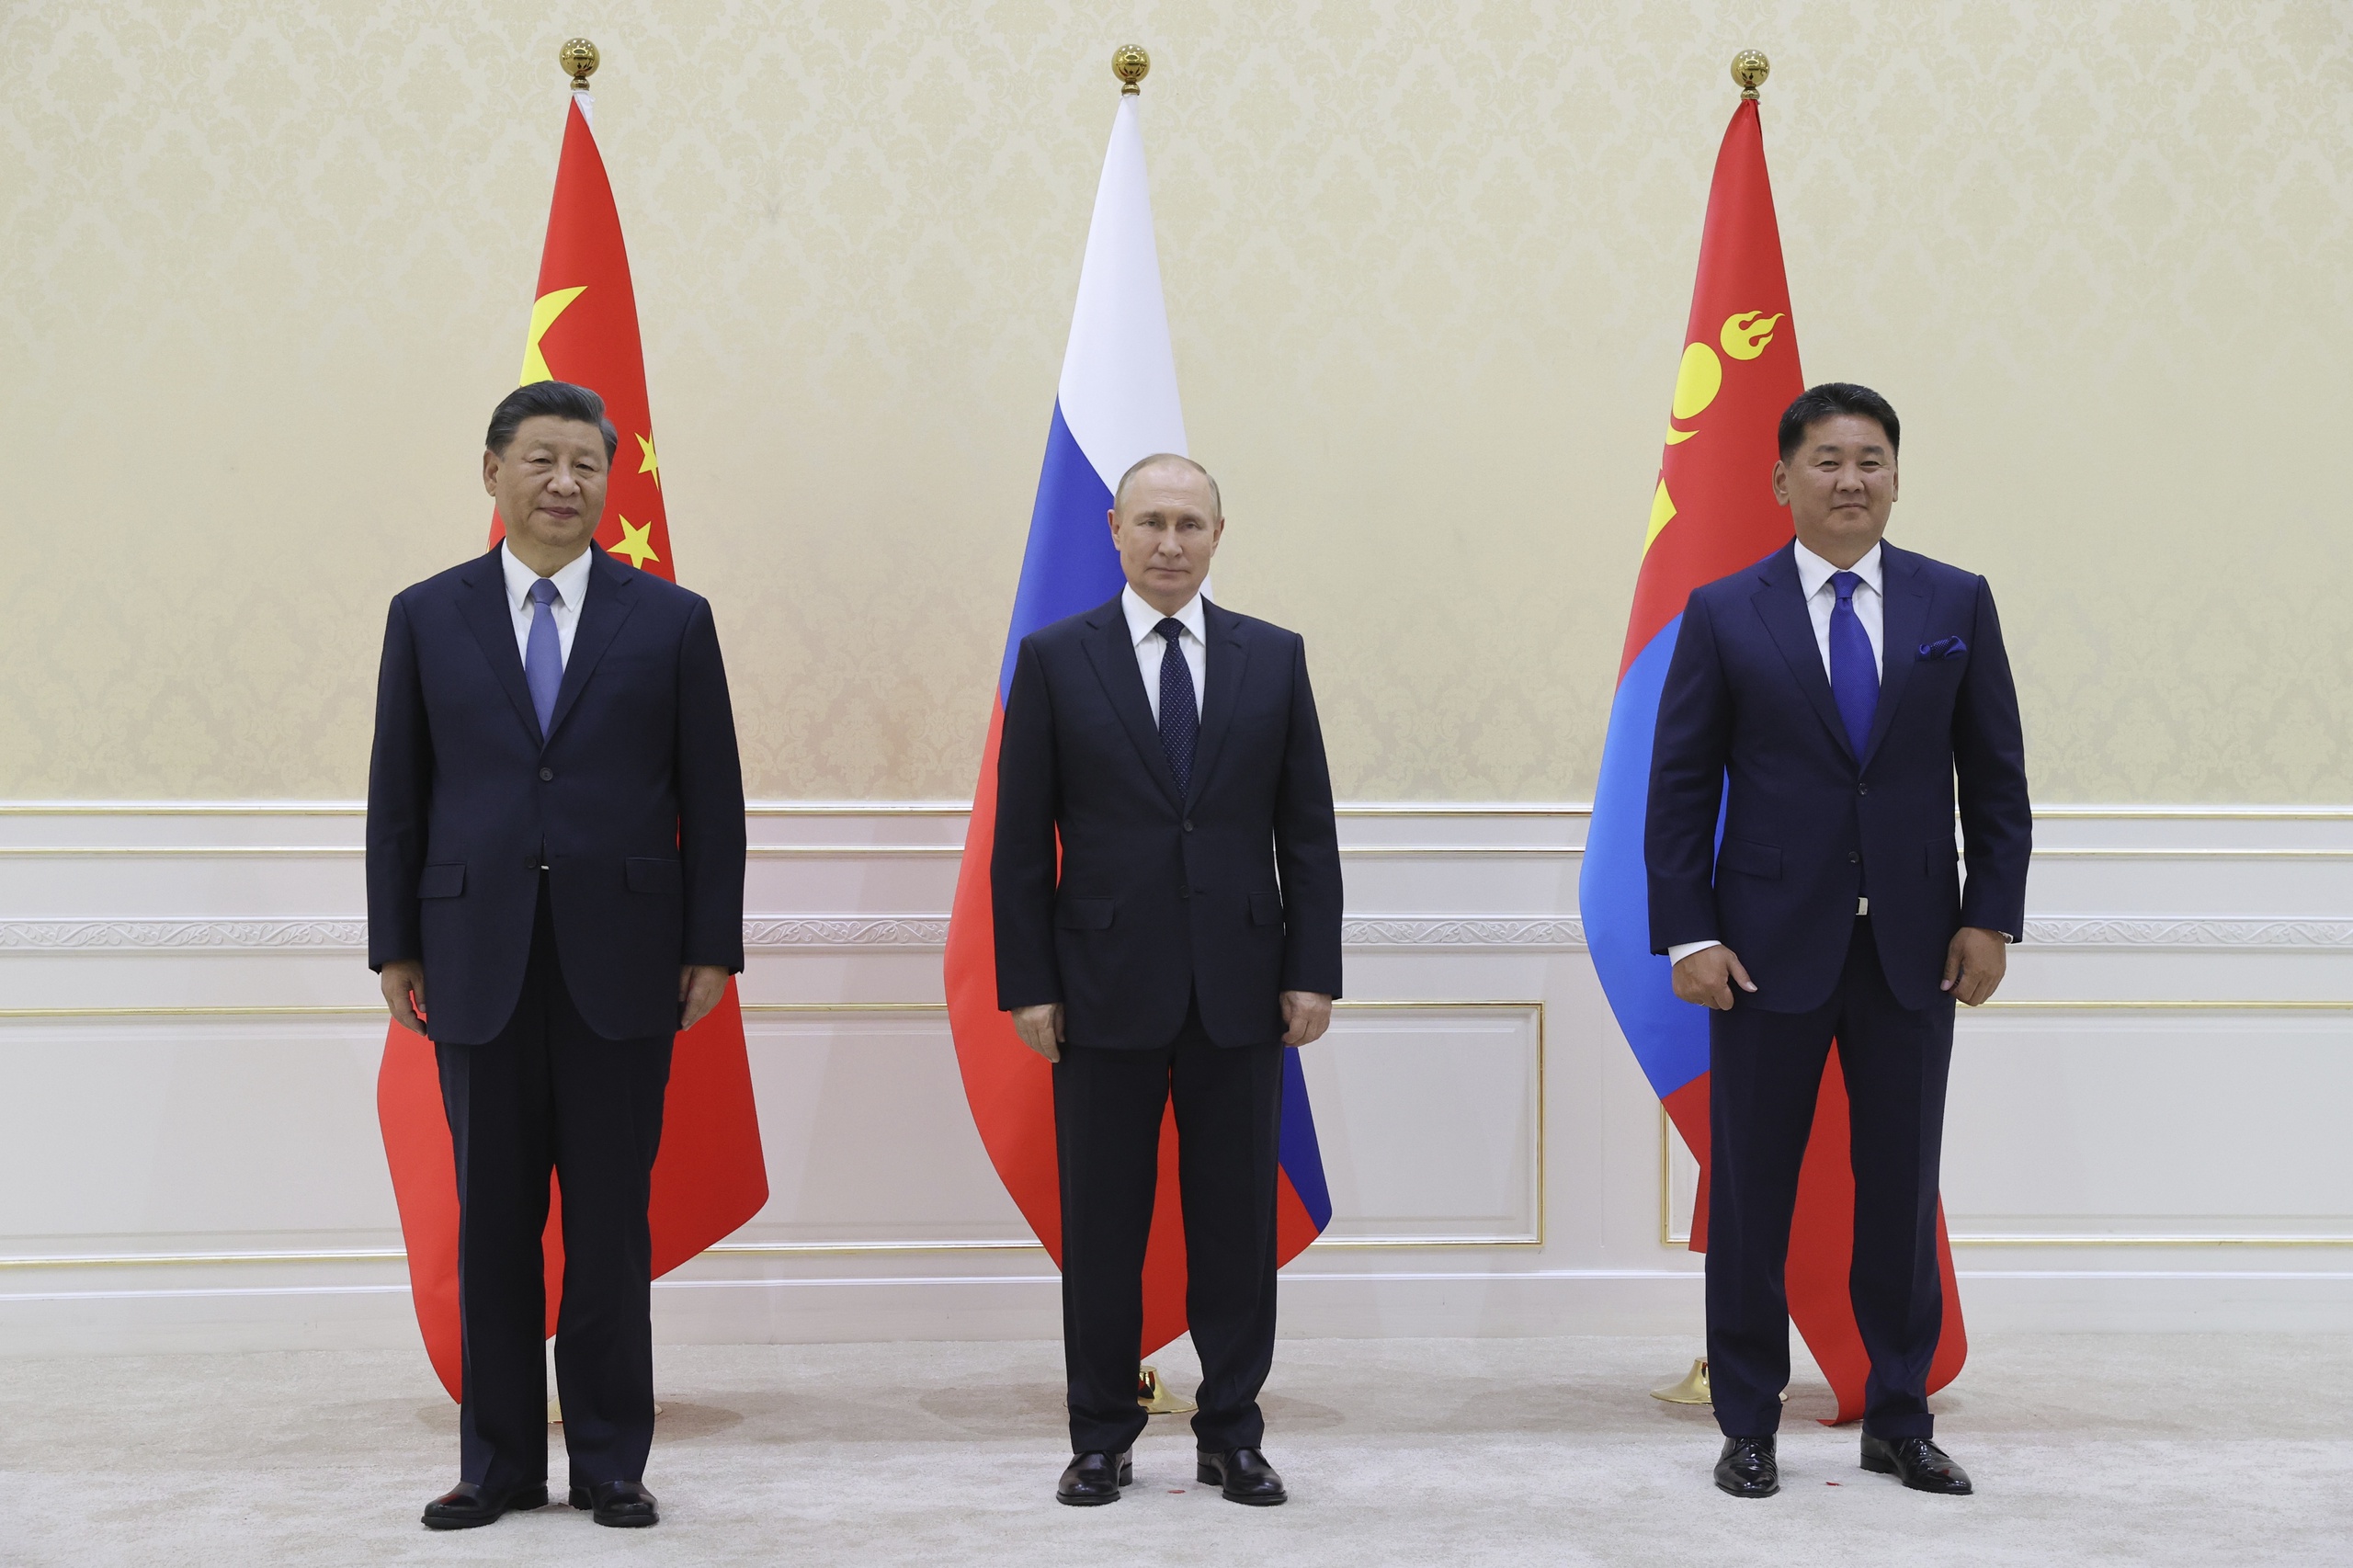 De Chinese President Xi Jinping, de Russische President Vladimir Putin, en de Mongoolse president Ukhnaa Khurelsukh.